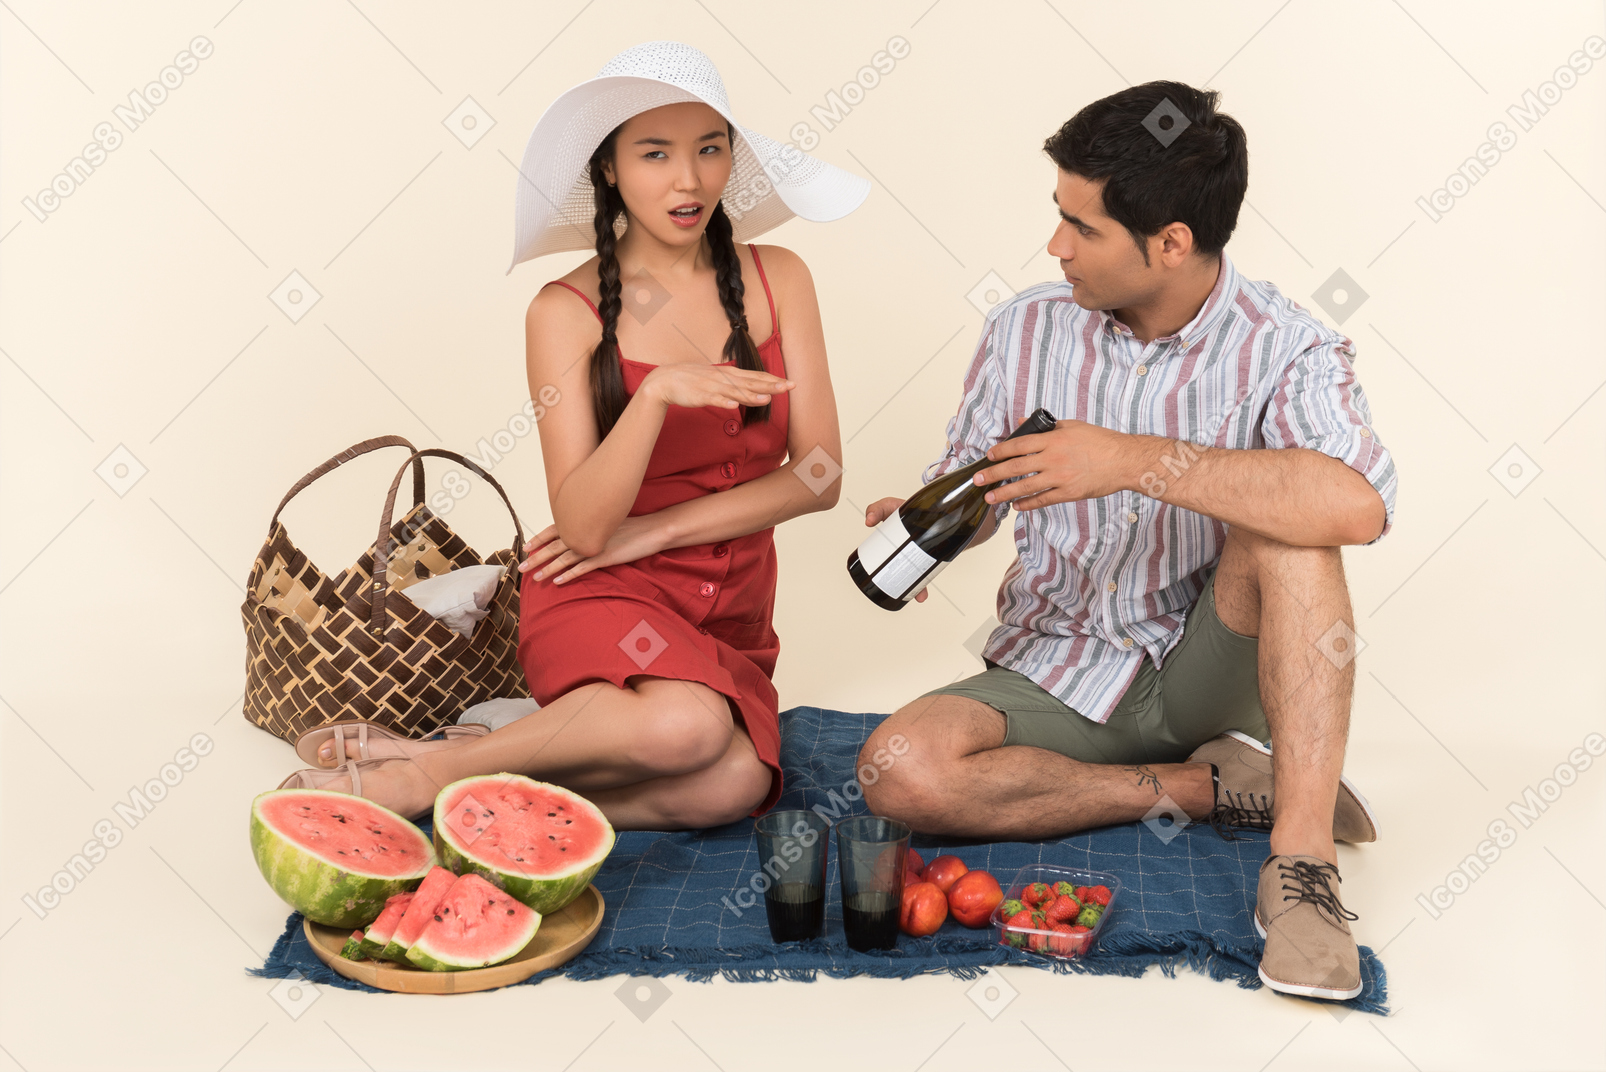 Cara jovem, mostrando uma garrafa de vinho em um piquenique para uma mulher que parece indignada